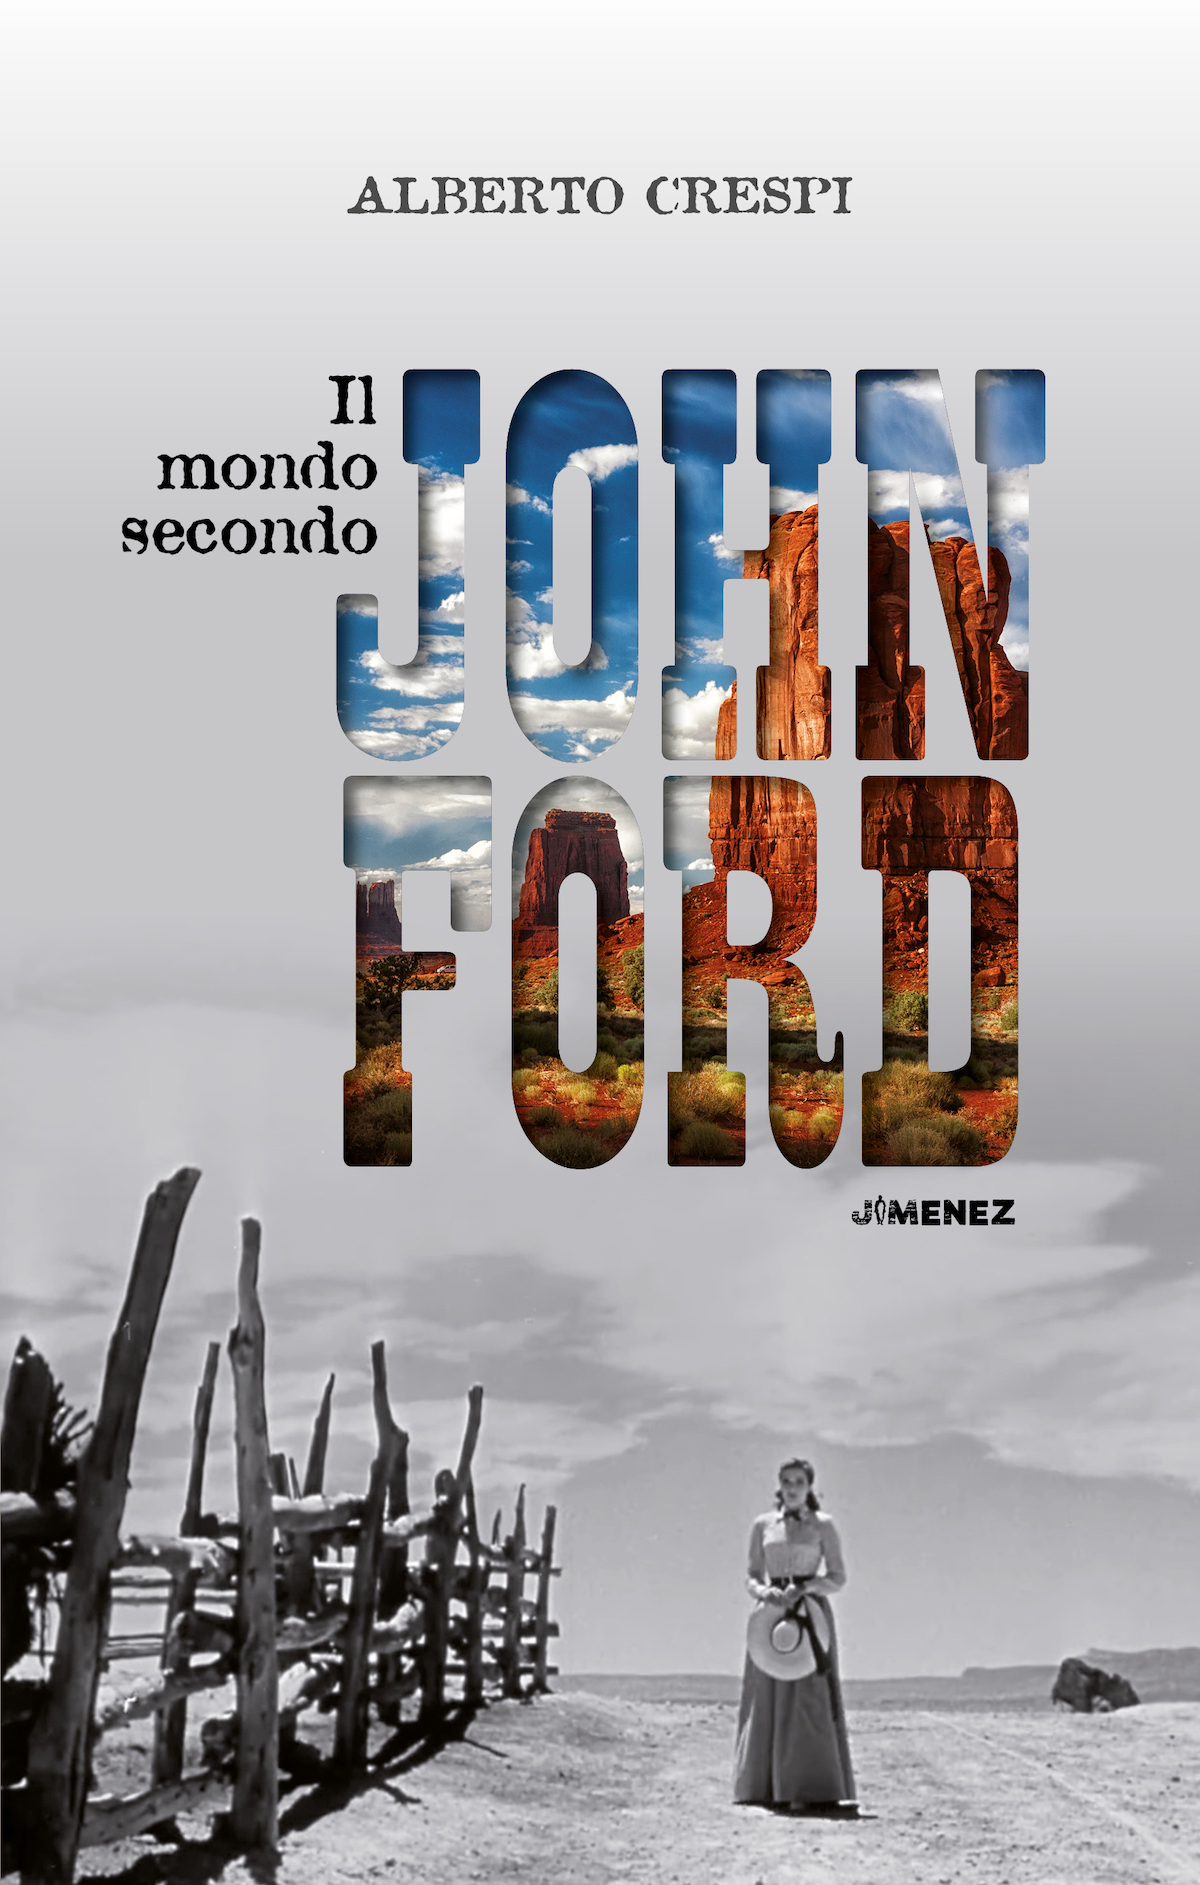 La copertina de Il mondo secondo John Ford di Alberto Crespi, ed. Jimenez